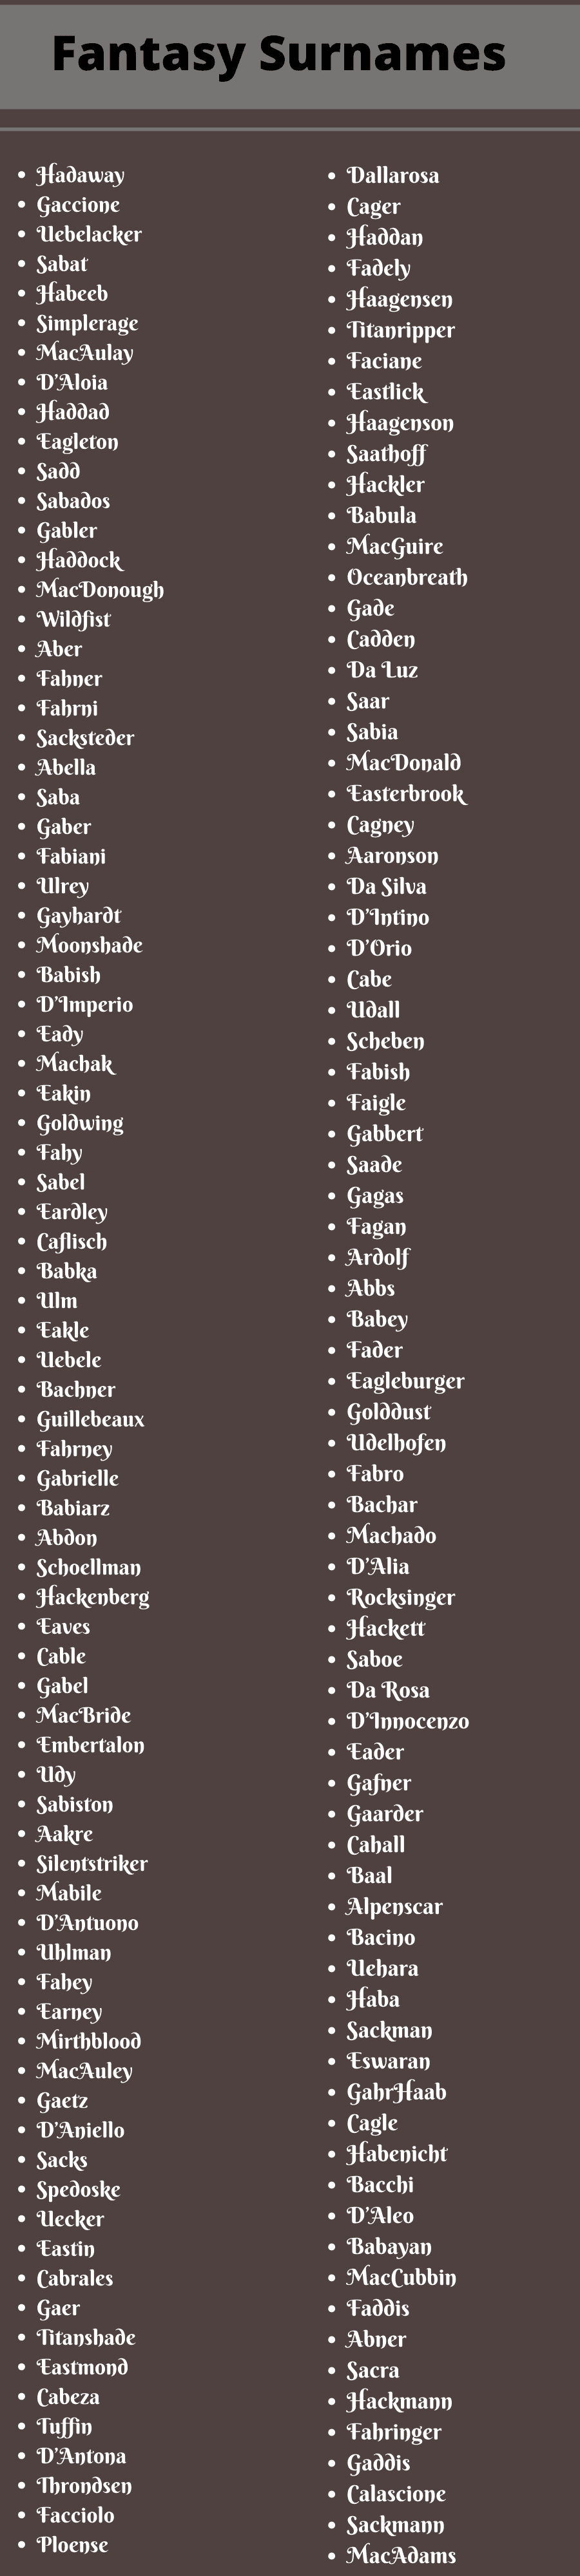 Fantasy Surnames 